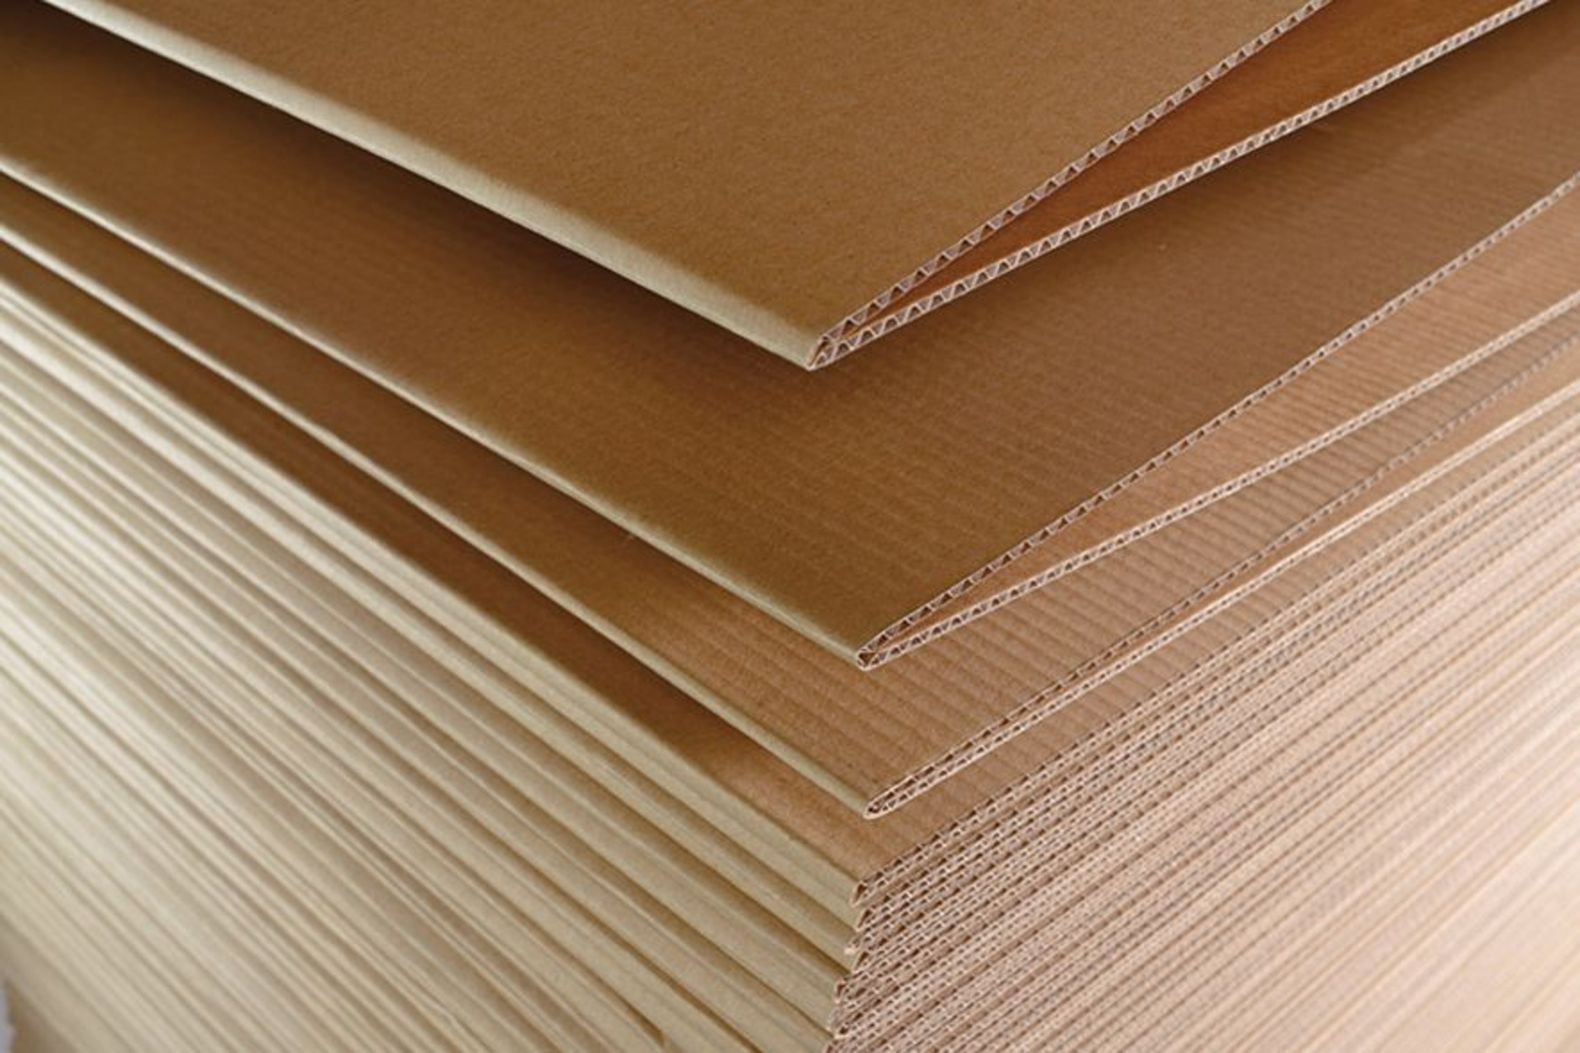 Papiers spéciaux - Fabricant de carton